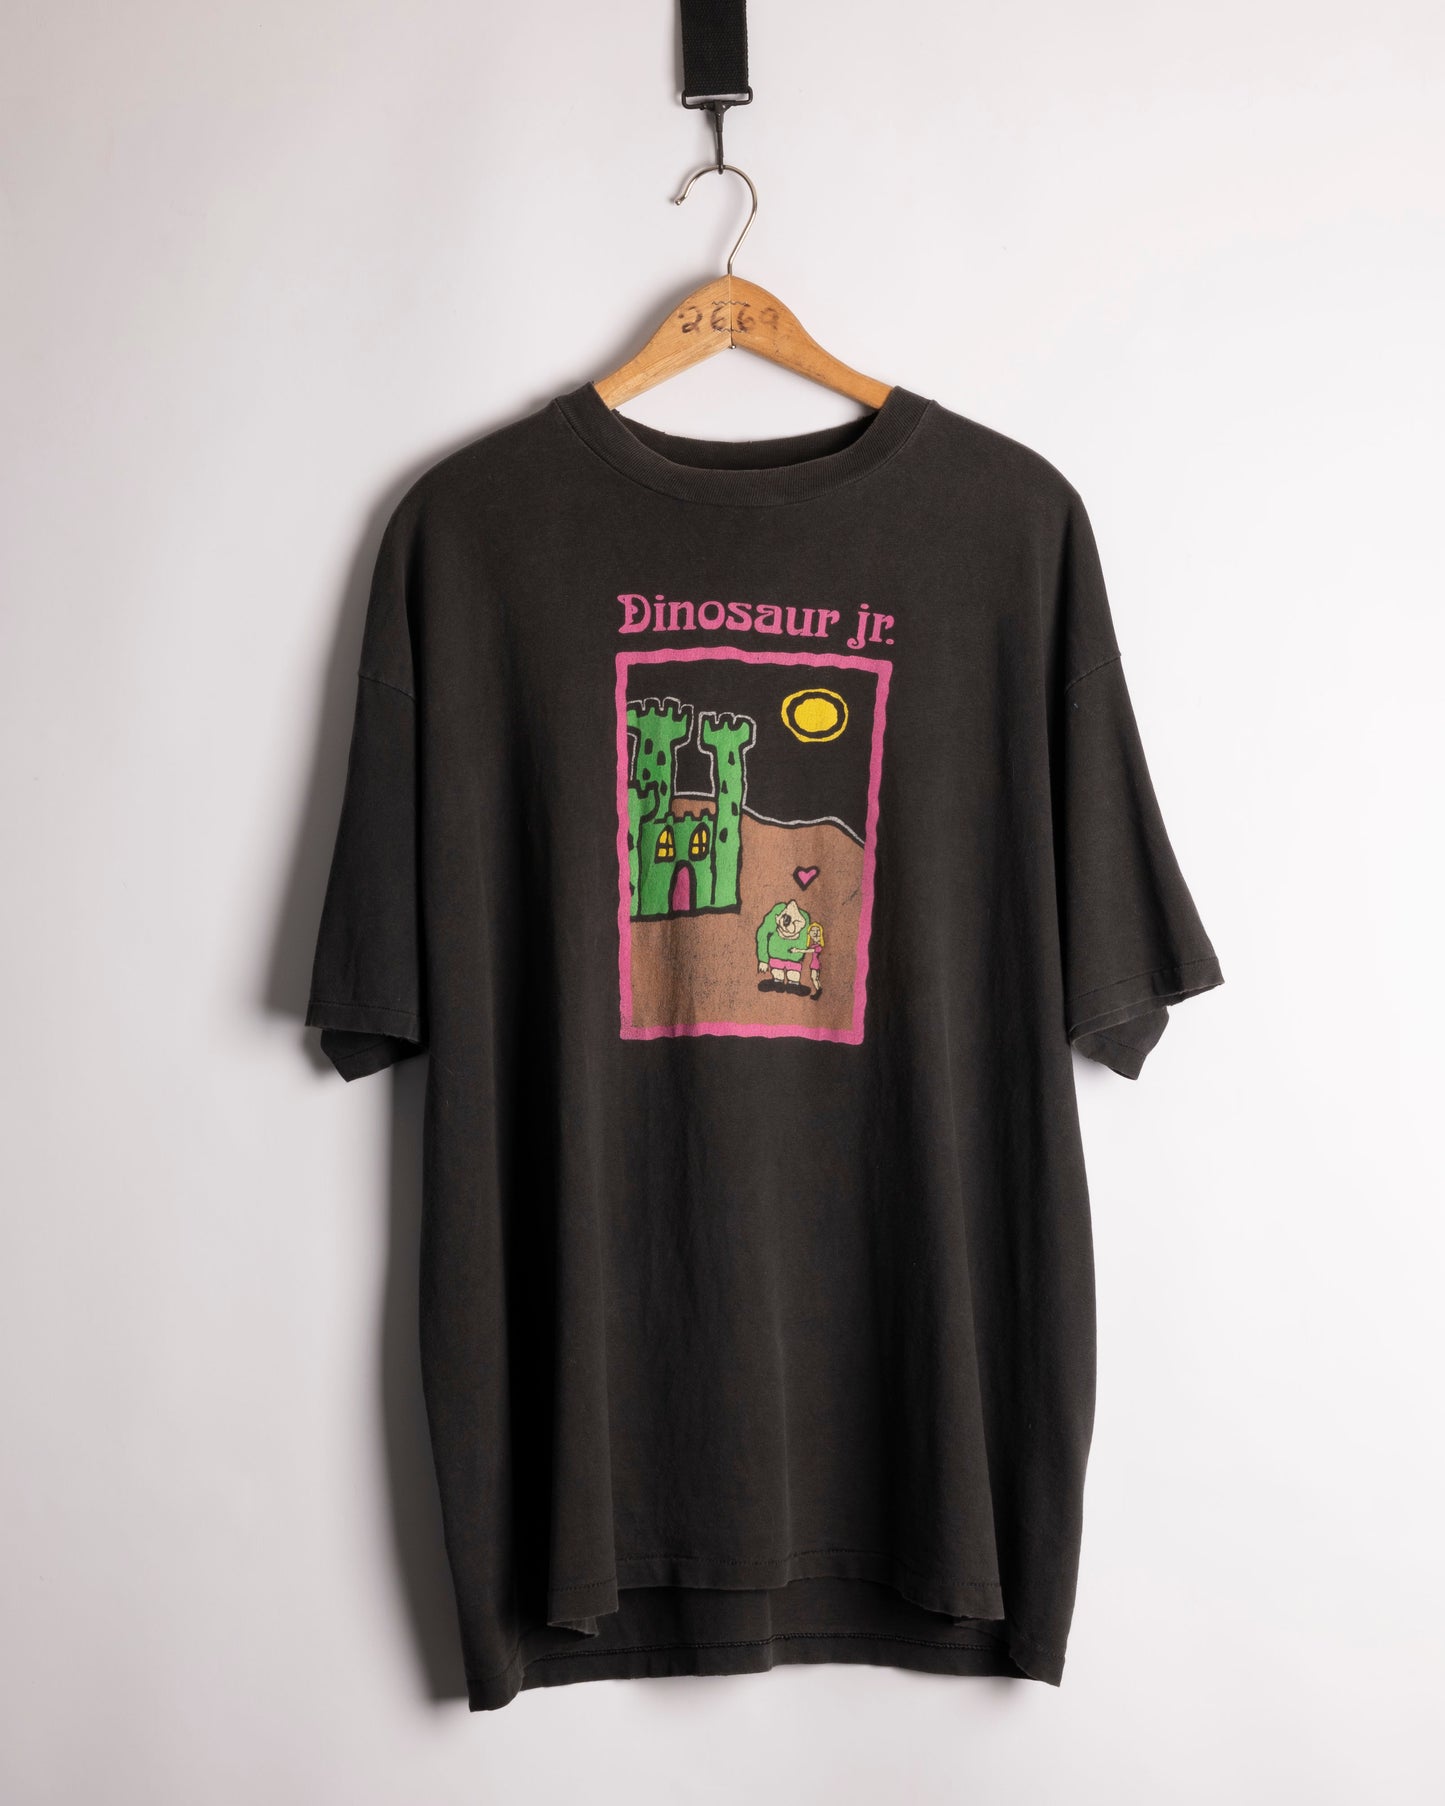 Dinosaur Jr t-shirt - 1993 - Large